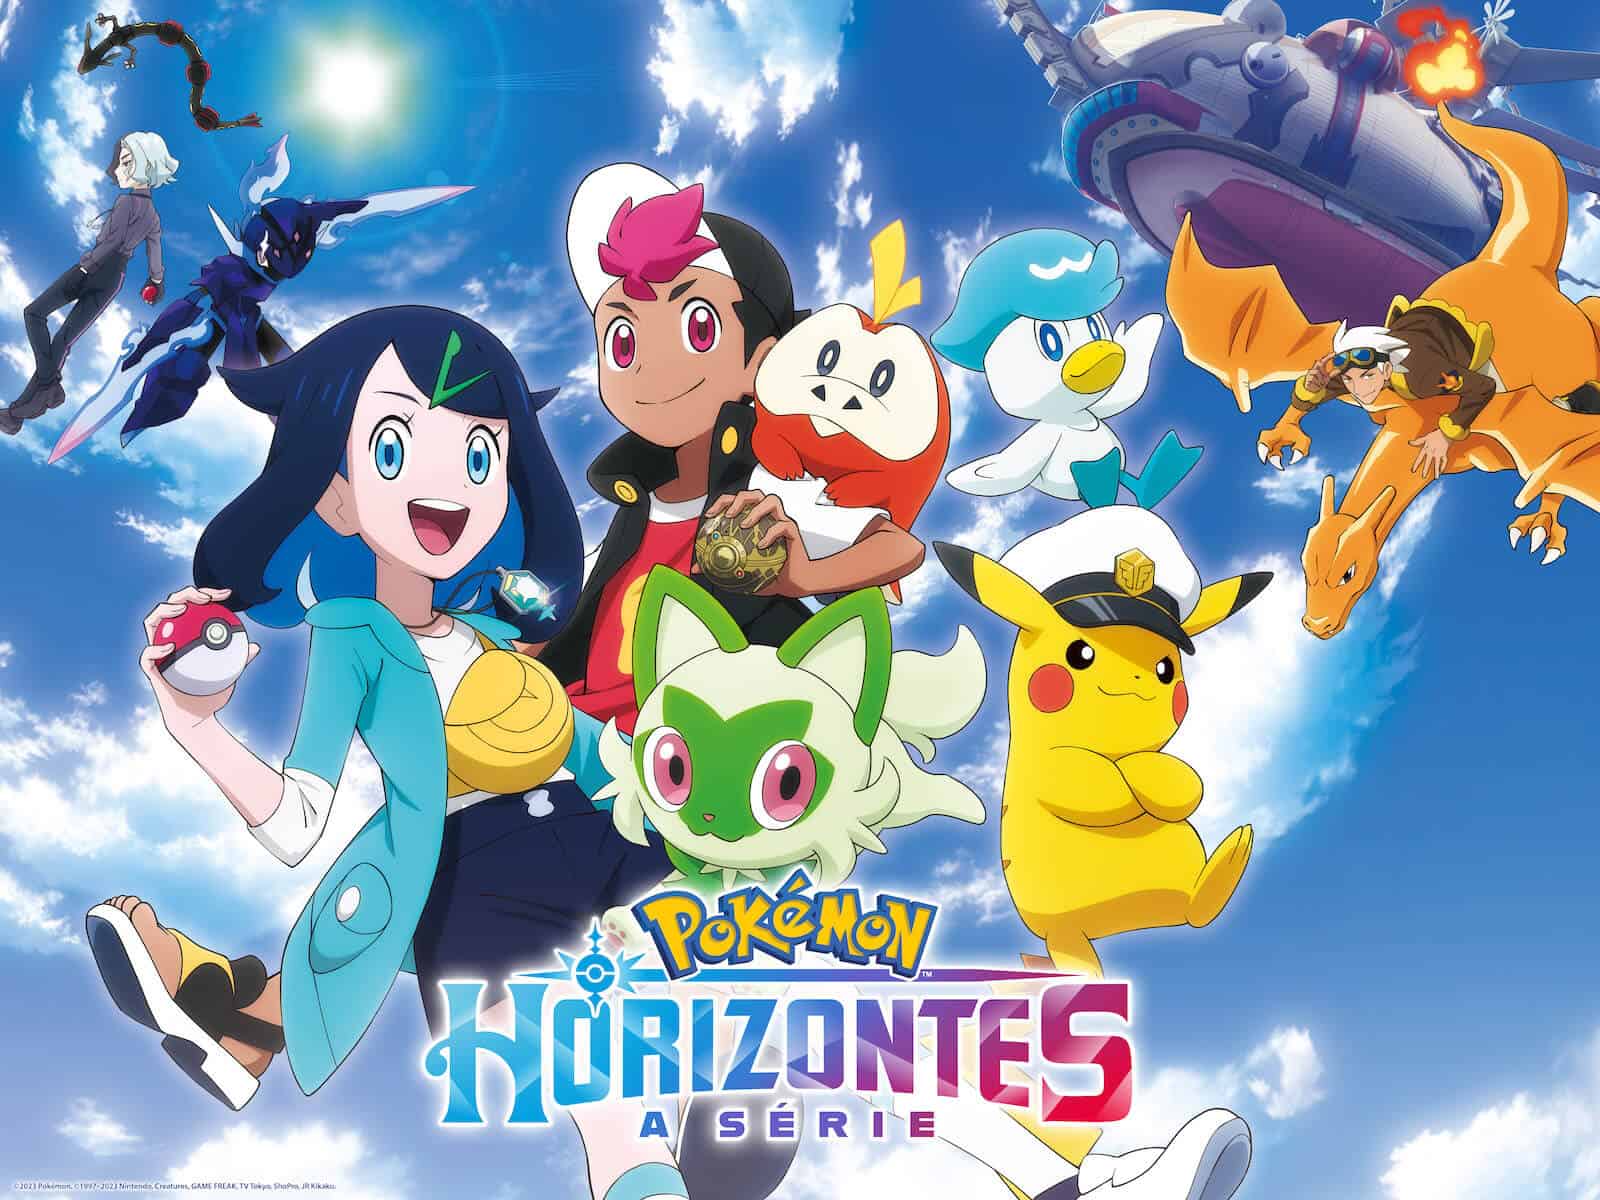 Brasil] A série Jornadas Supremas Pokémon